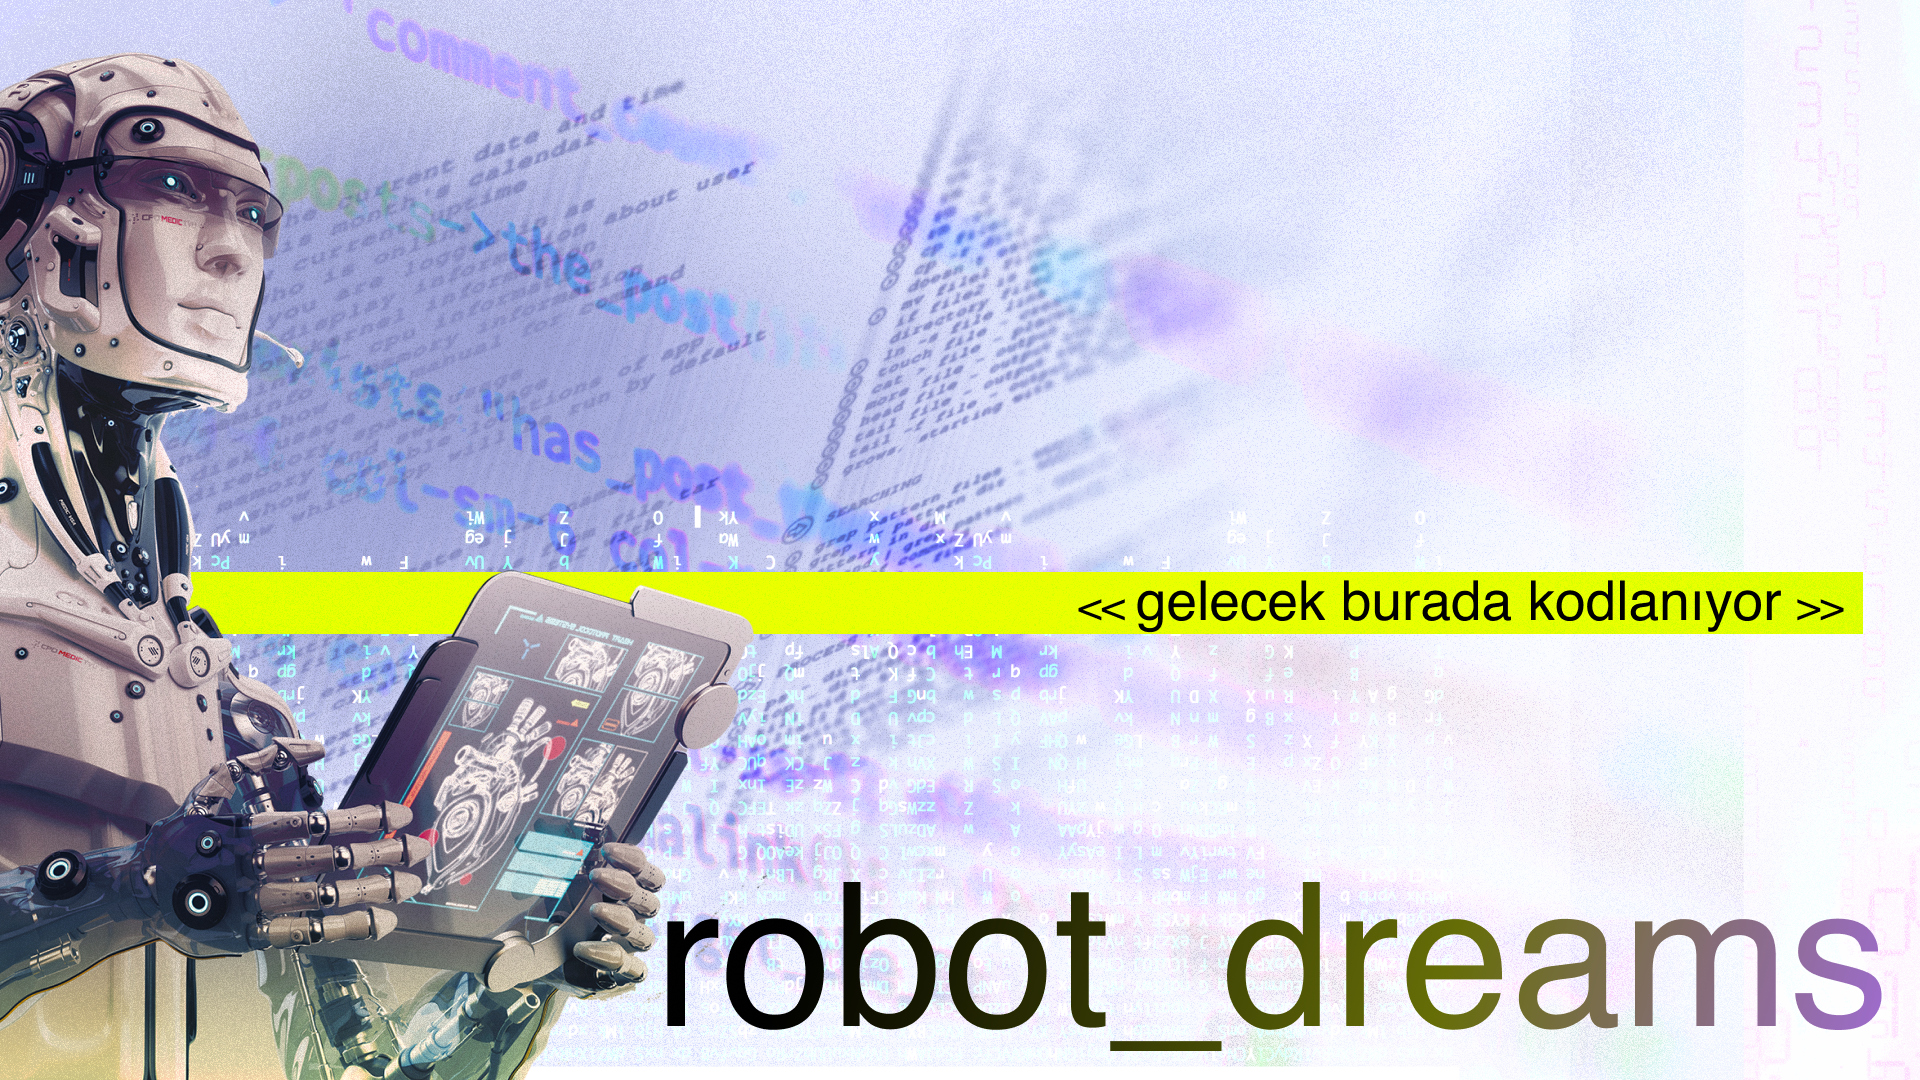 GELECEĞİN OKULU ROBOT_DREAMS ARTIK TÜRKİYE’DE